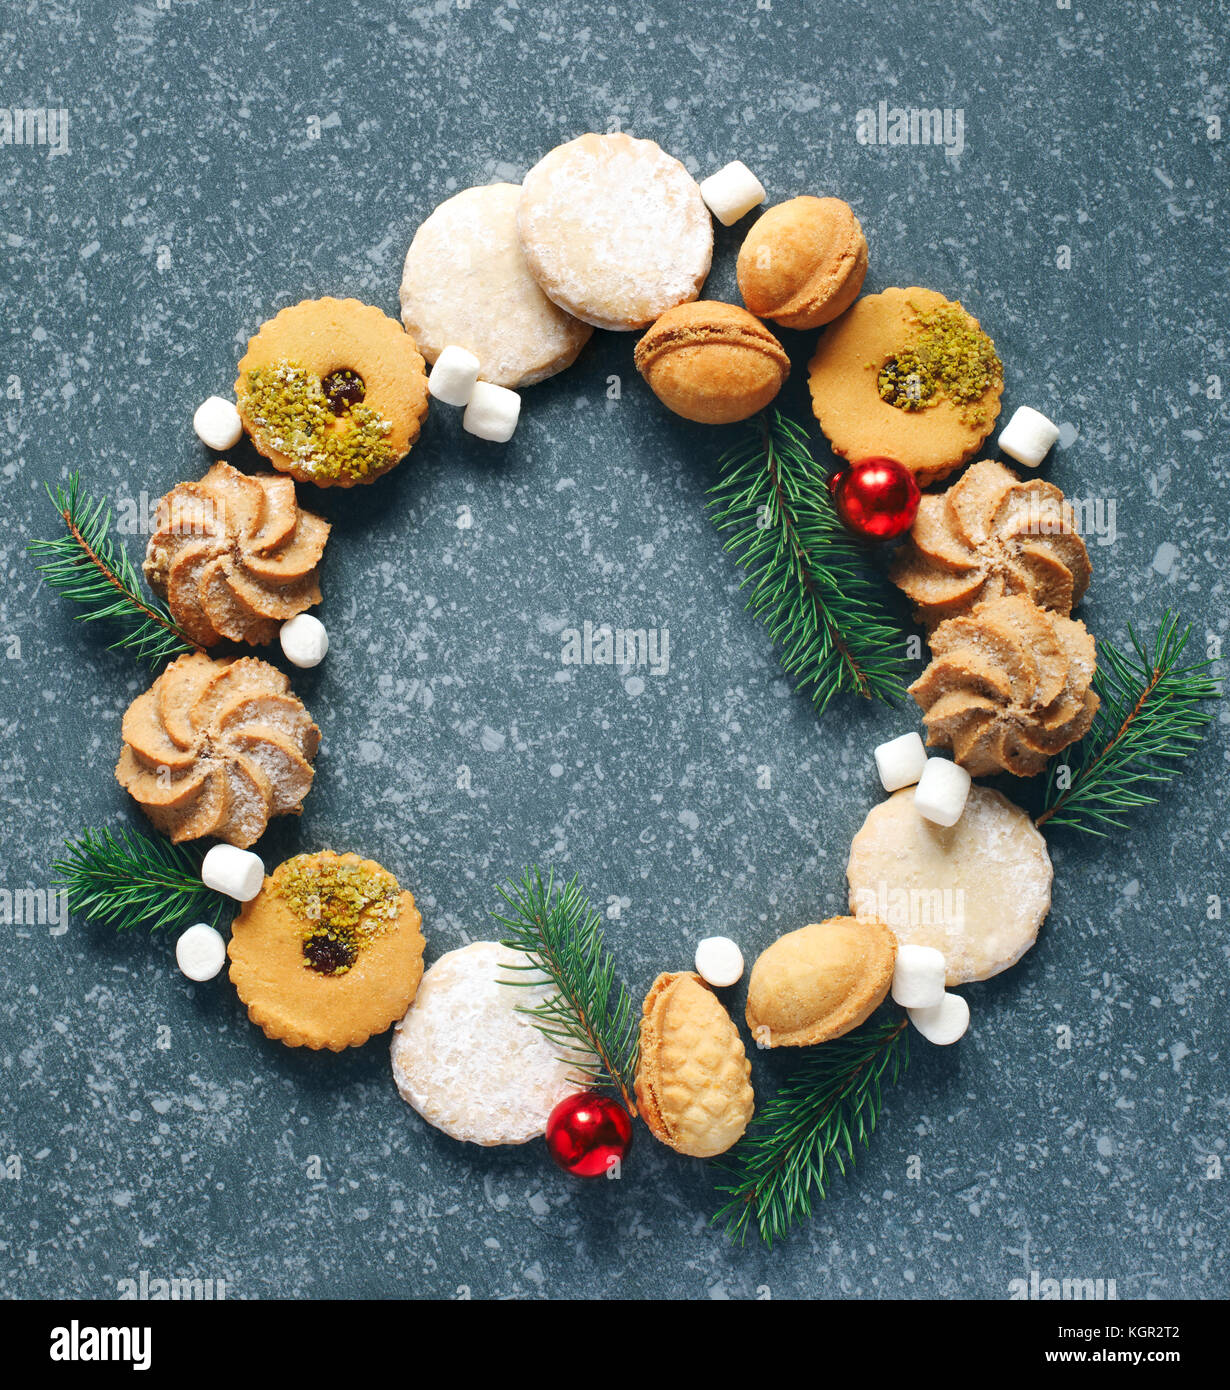 Weihnachtsplätzchen Kranz. assorted Cookies: Linzer Plätzchen, Kekse, Nüsse cookie, orange almond Cookie. Stockfoto